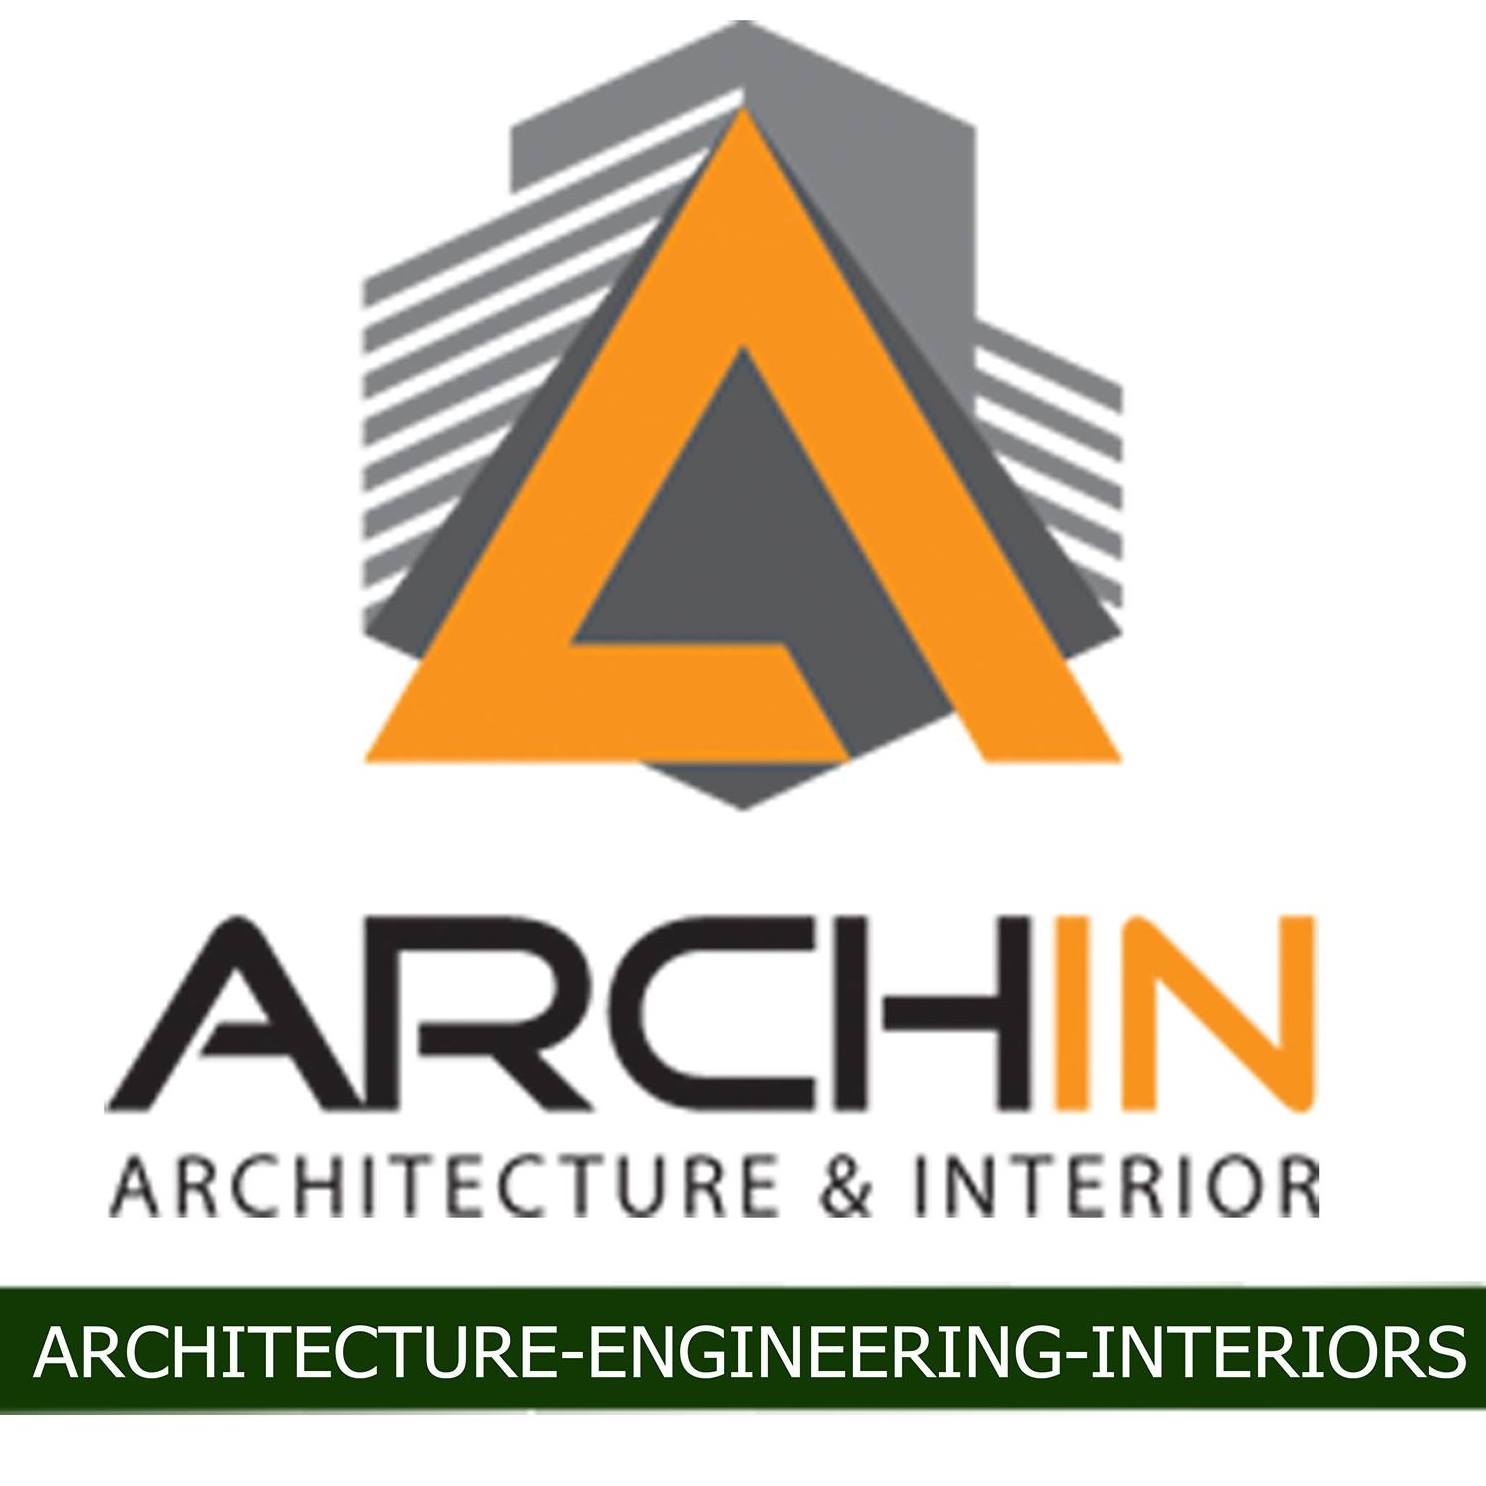 ARCHIN Architecture & Interior Studio|IT Services|Professional Services